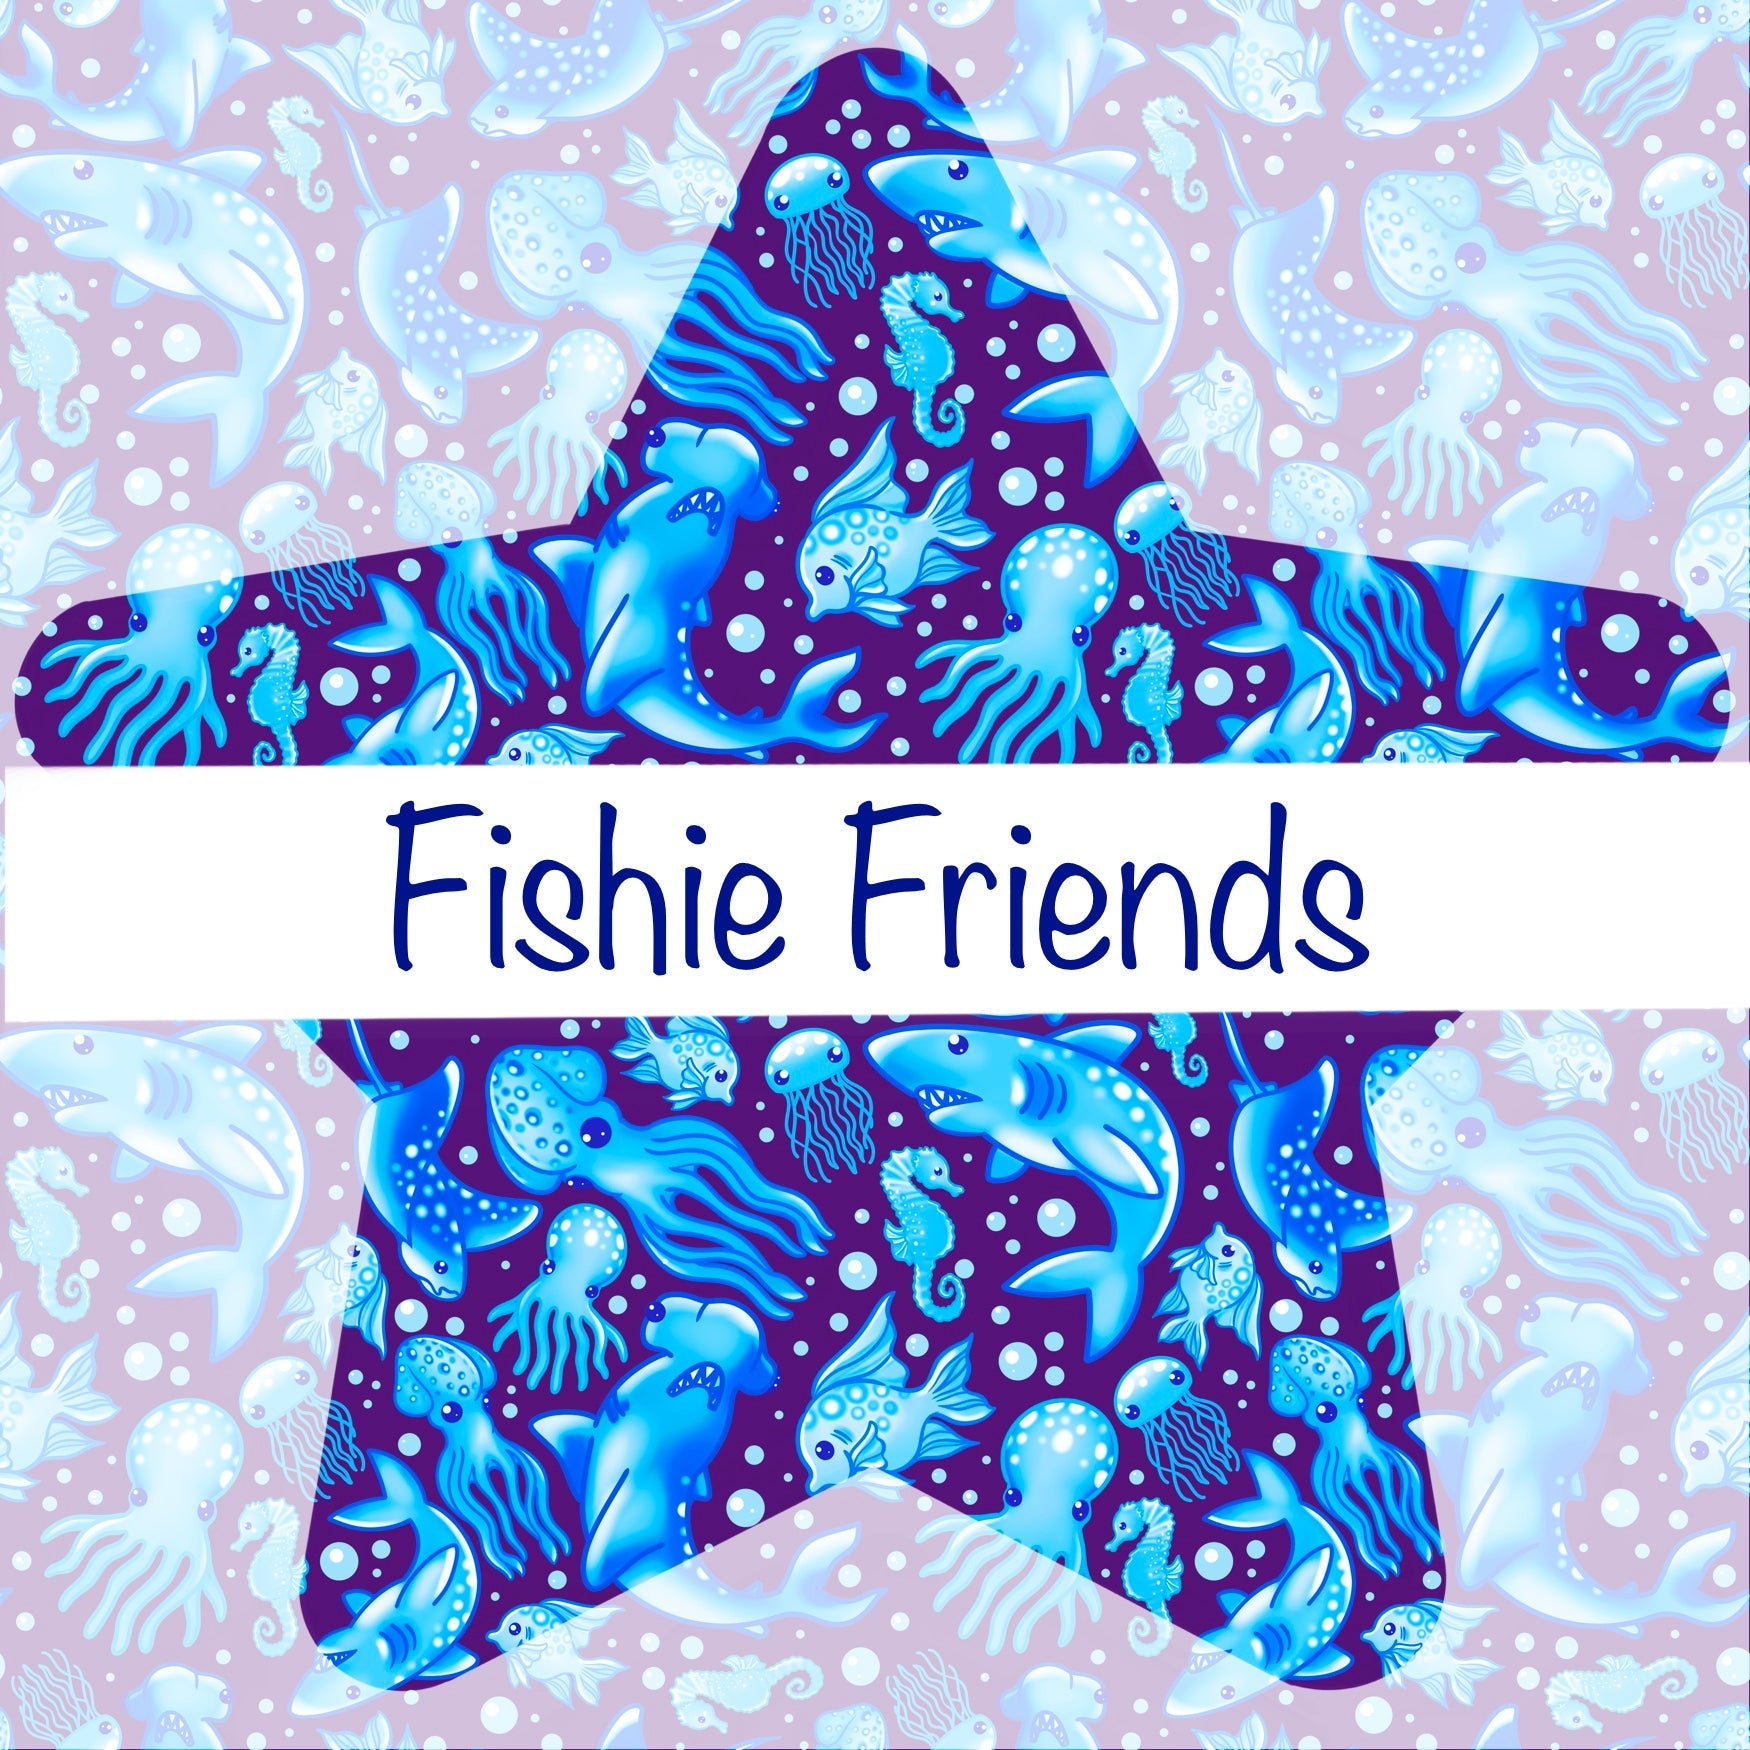 Fishie Friends - Blue Plum